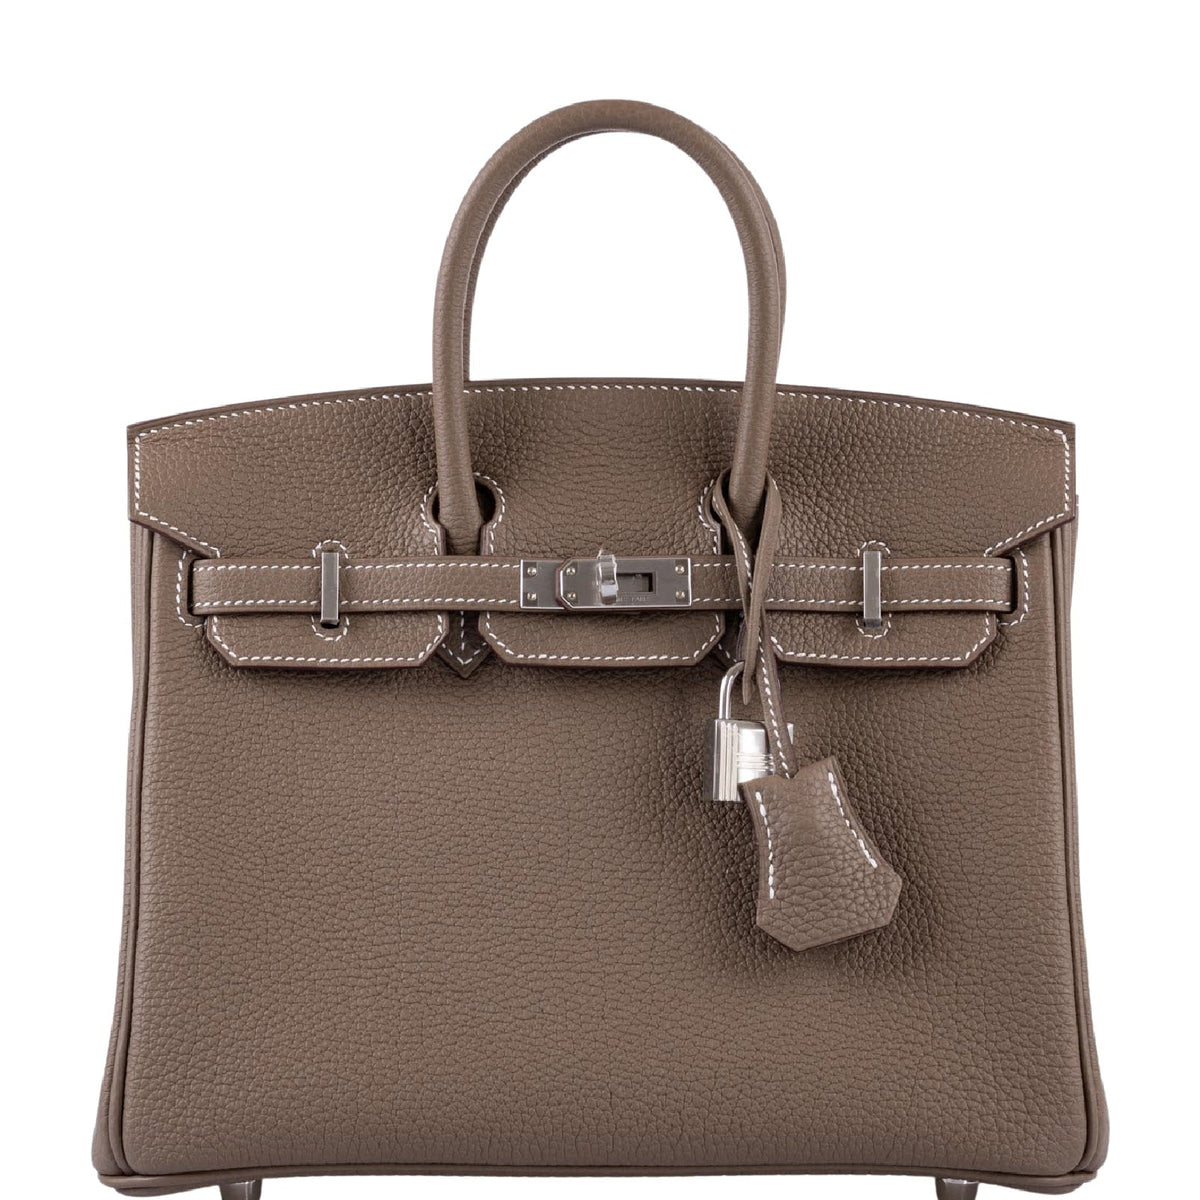 HERMÈS Kelly 25 handbag in Etoupe Togo leather with Palladium